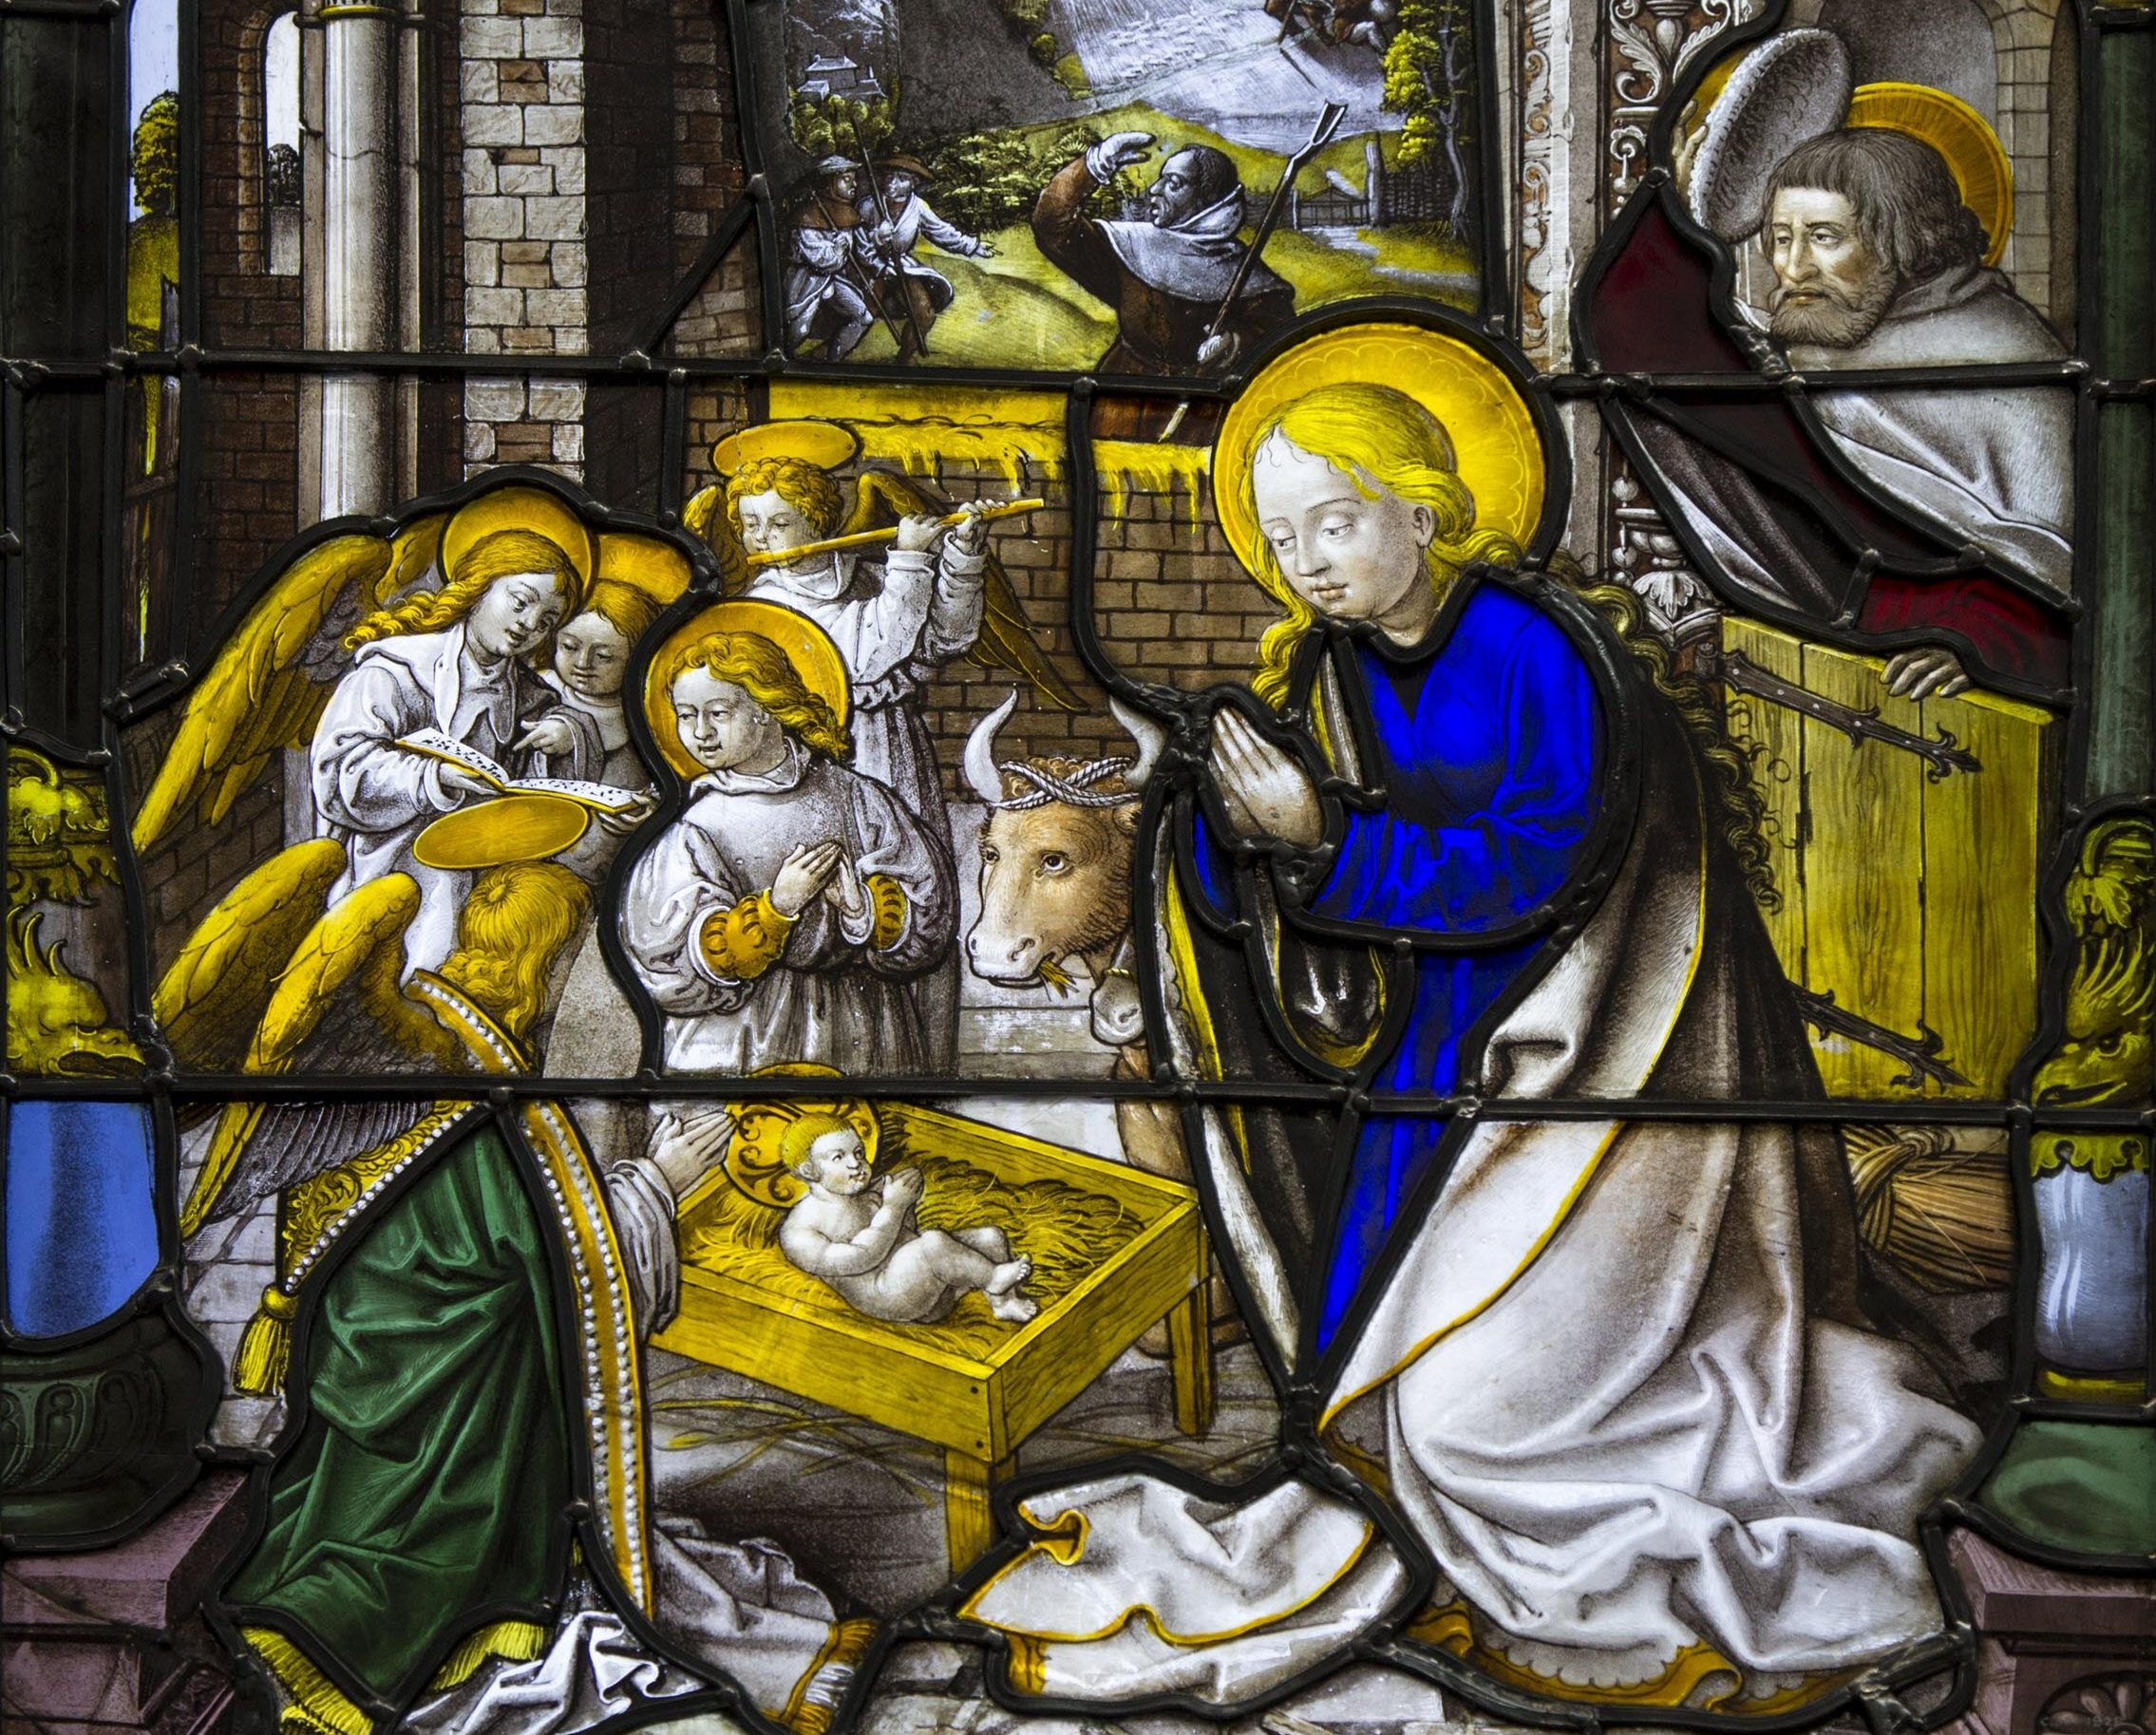 ولادة المسيح المذكورة في الأناجيل وتناسقها وتوافقها مع التاريخ والمؤرخين​ - ماي روك (منتديات الكنيسة العربية)